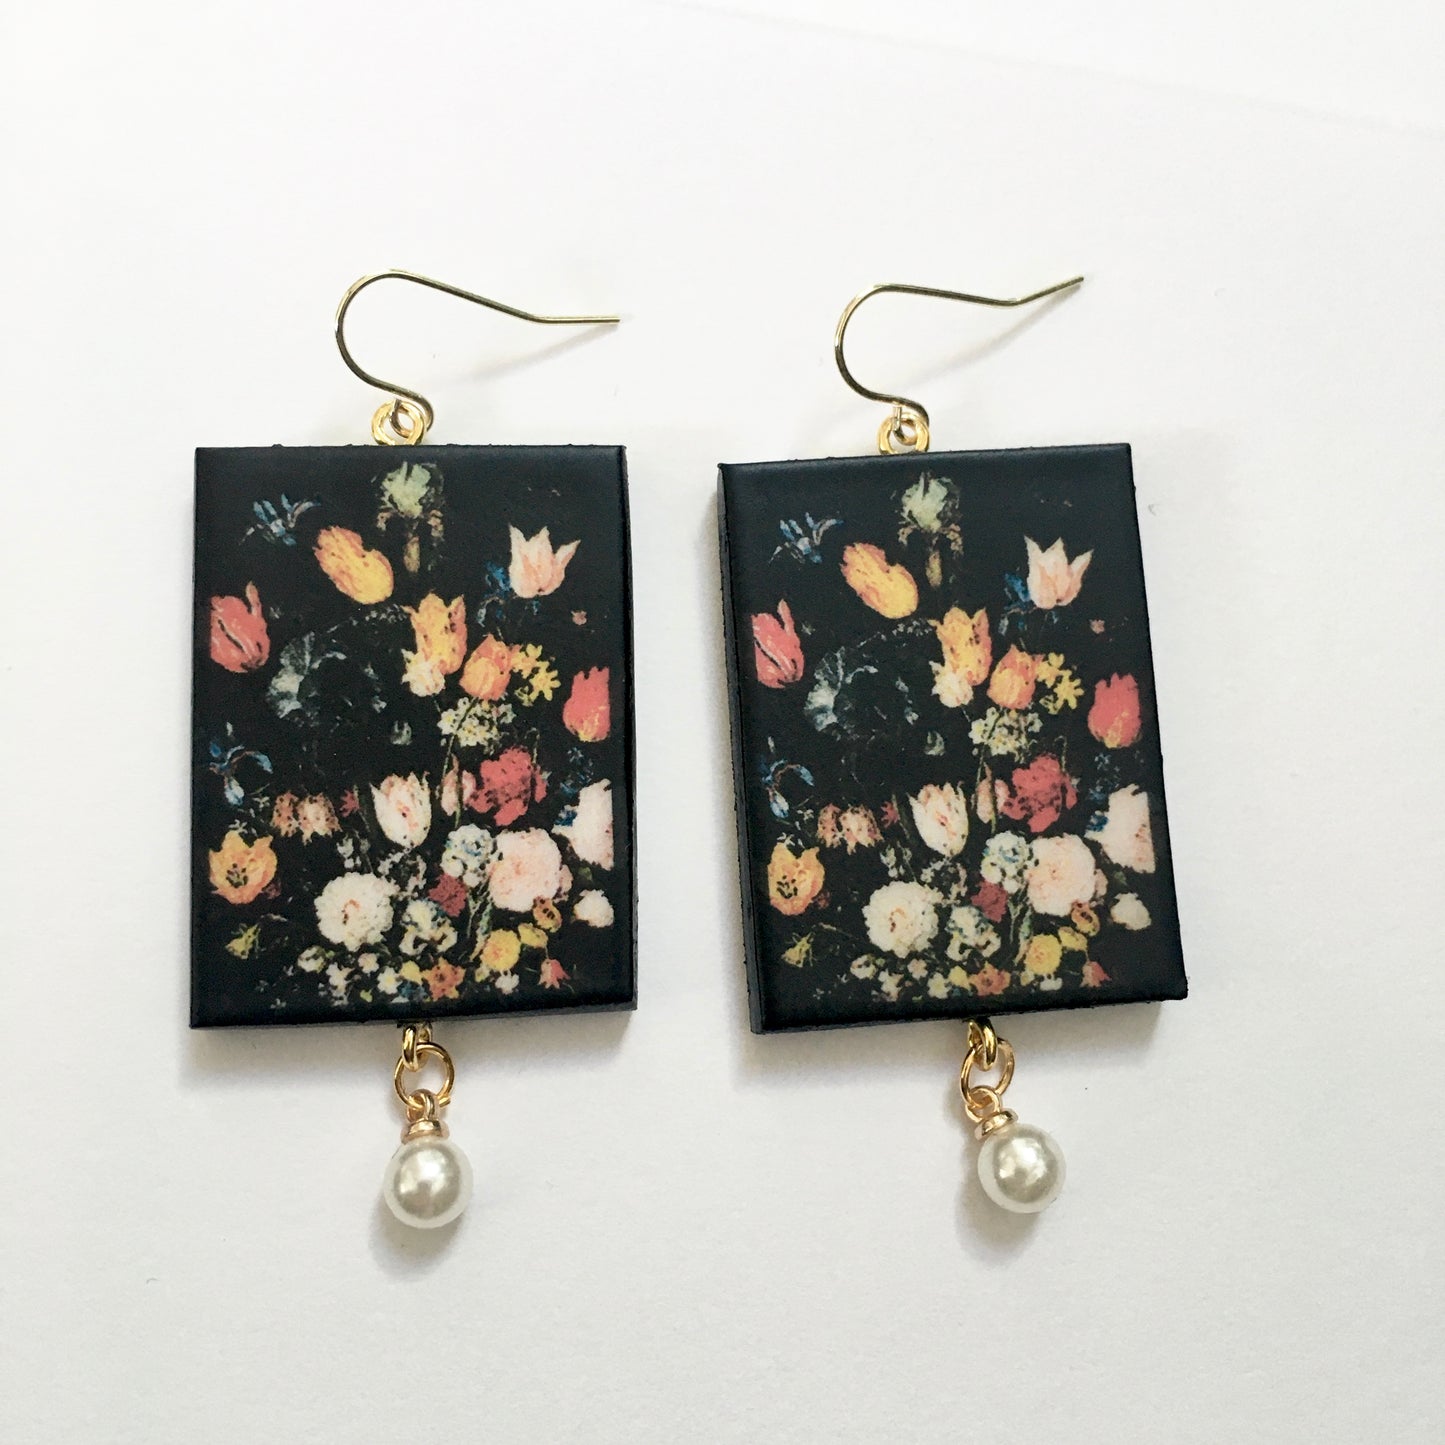 Bruegel flower earrings with pearls